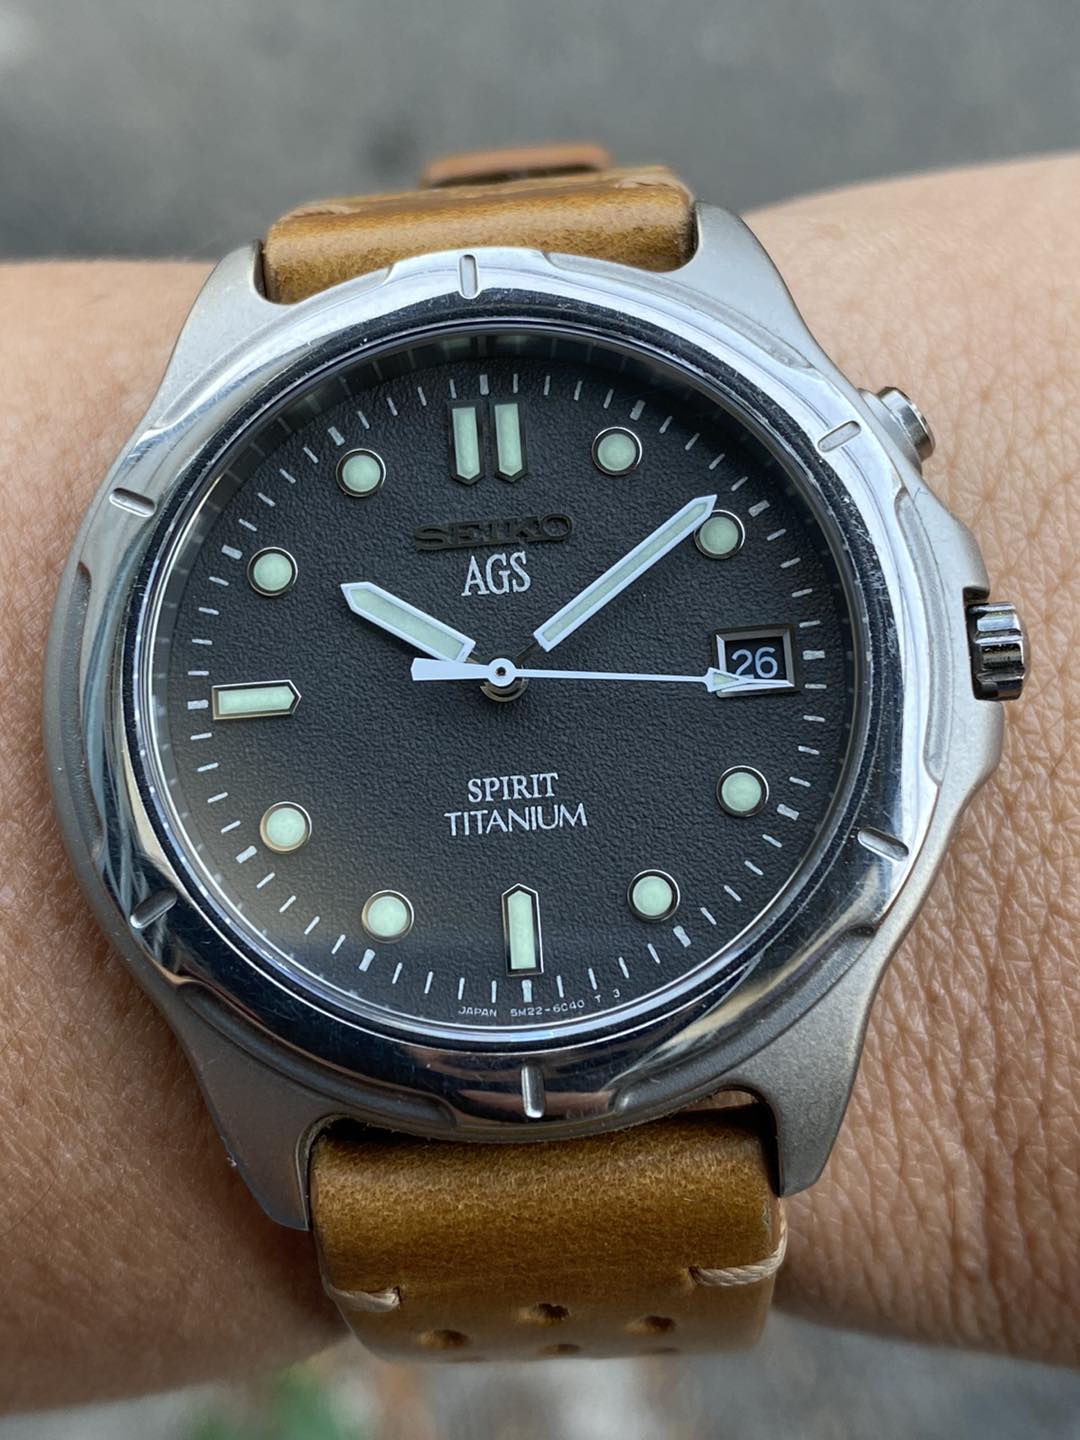 Seiko AGS Spirit Titanium 5M22-6B50 – Long's Fine Watches